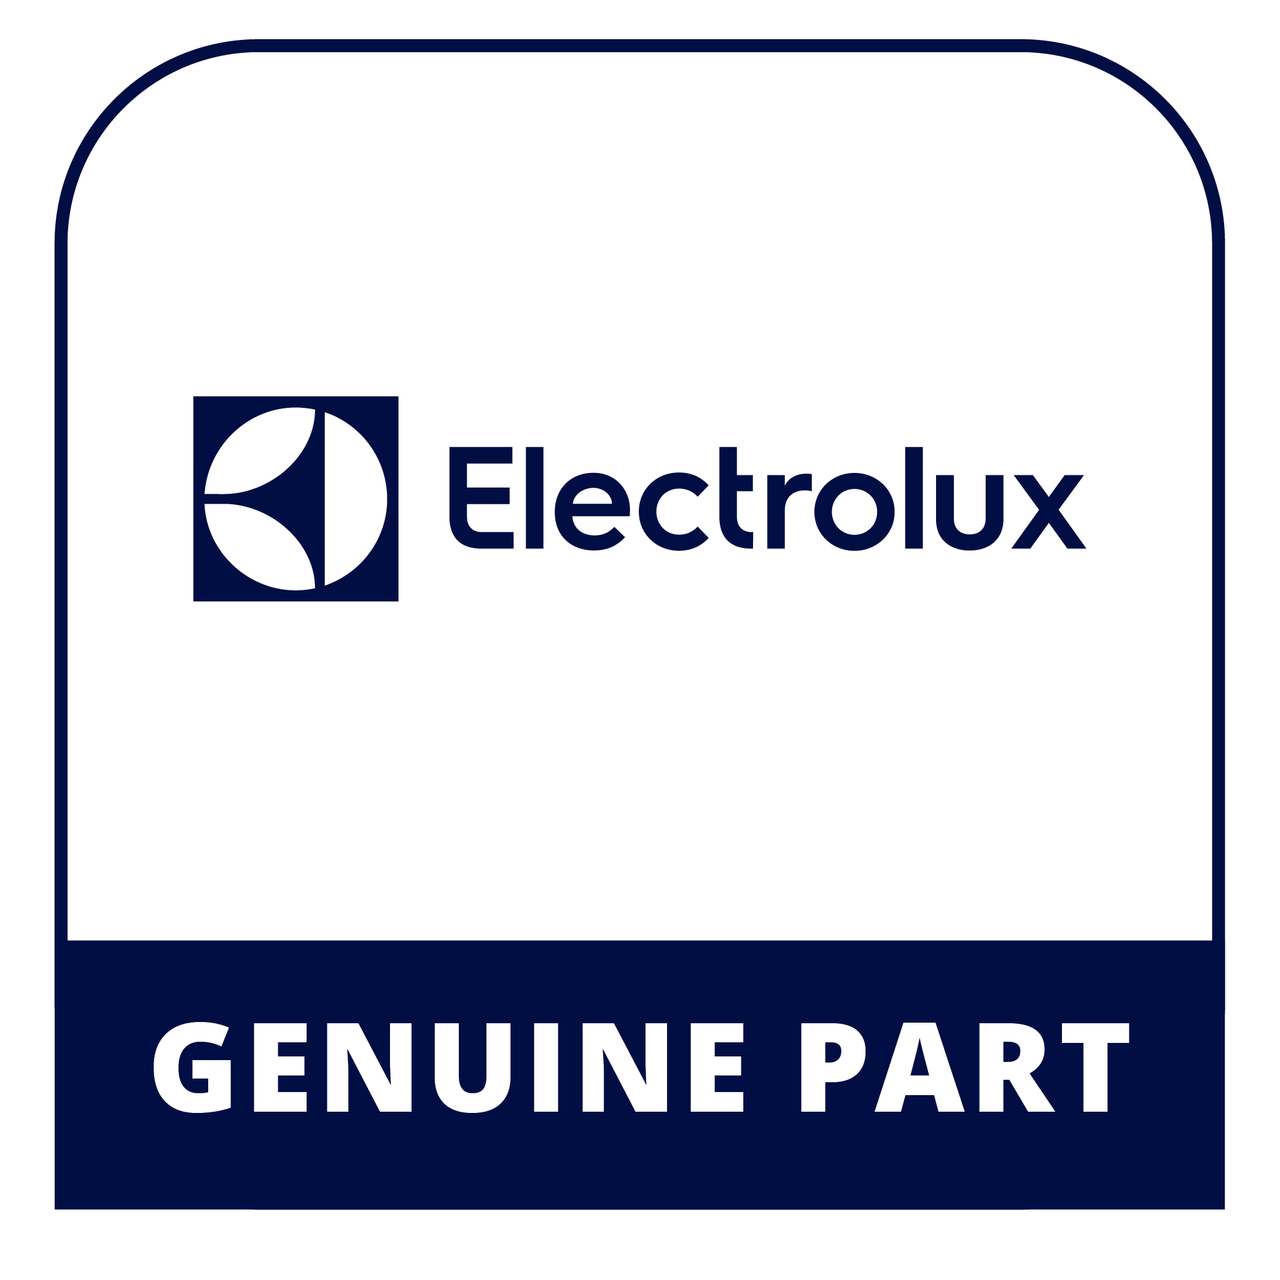 Frigidaire - Electrolux 5303925377 - End Cap Set Rh & Lh - Genuine Electrolux Part